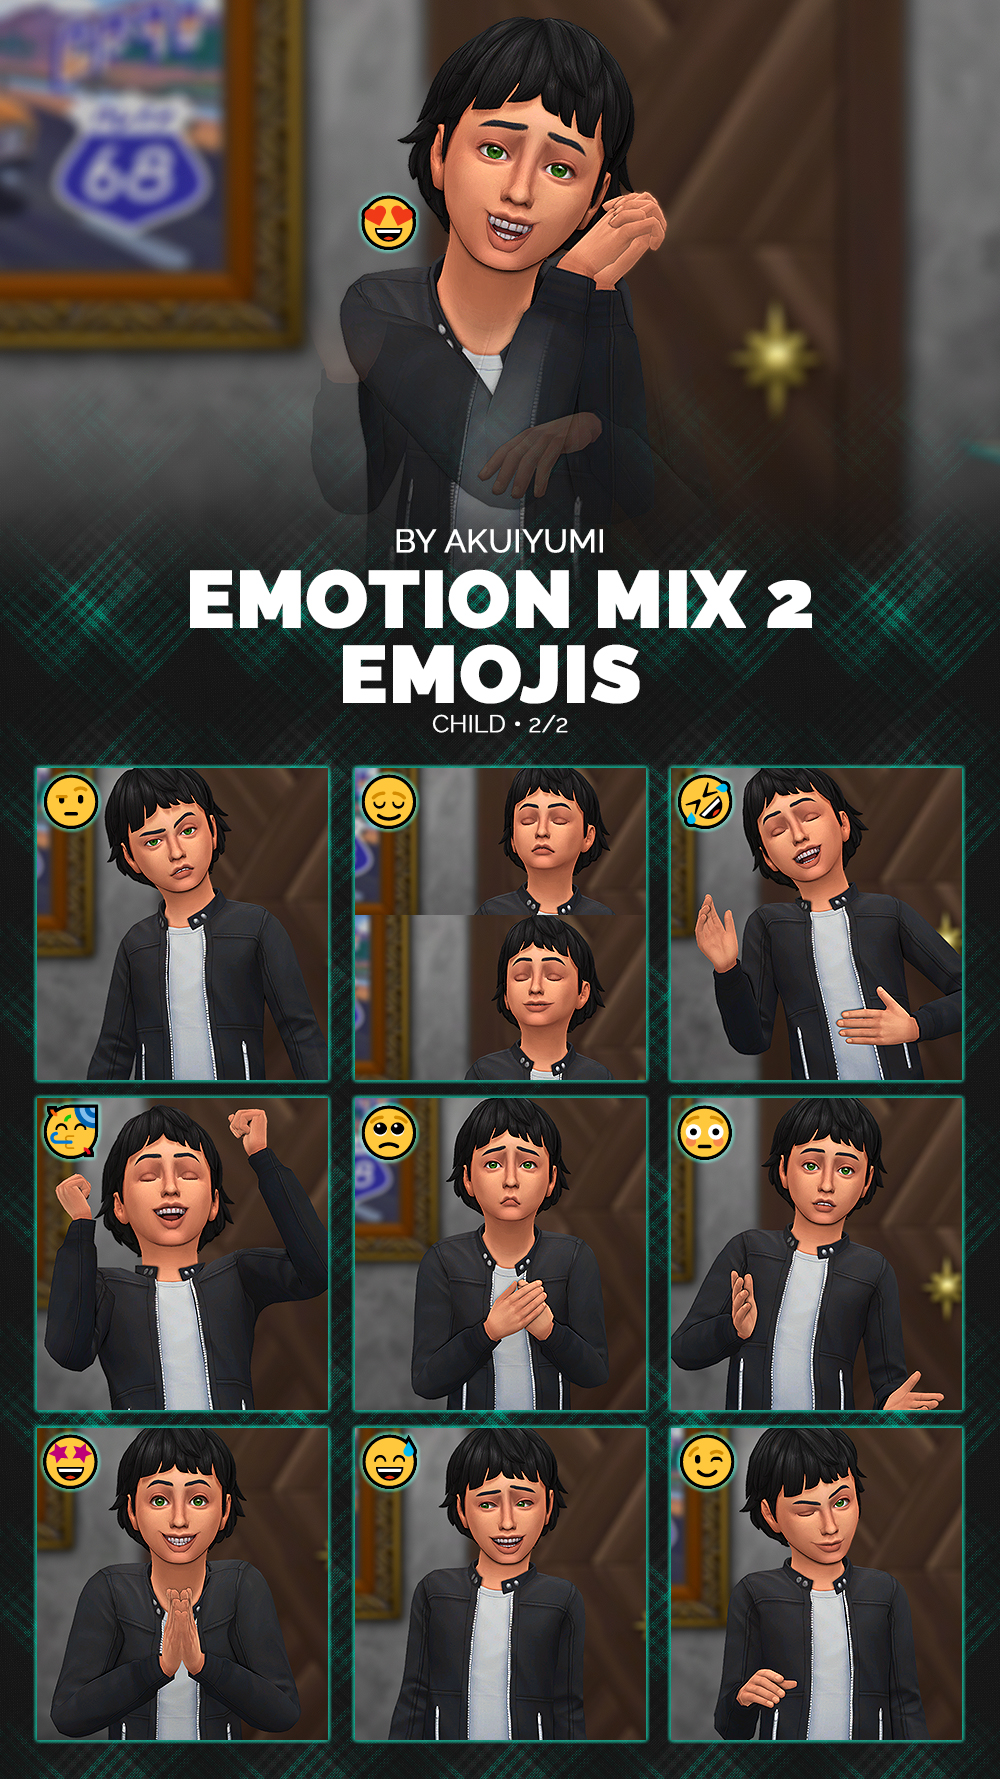 Random Emotions pt. 1 - The Sims 4 Mods - CurseForge